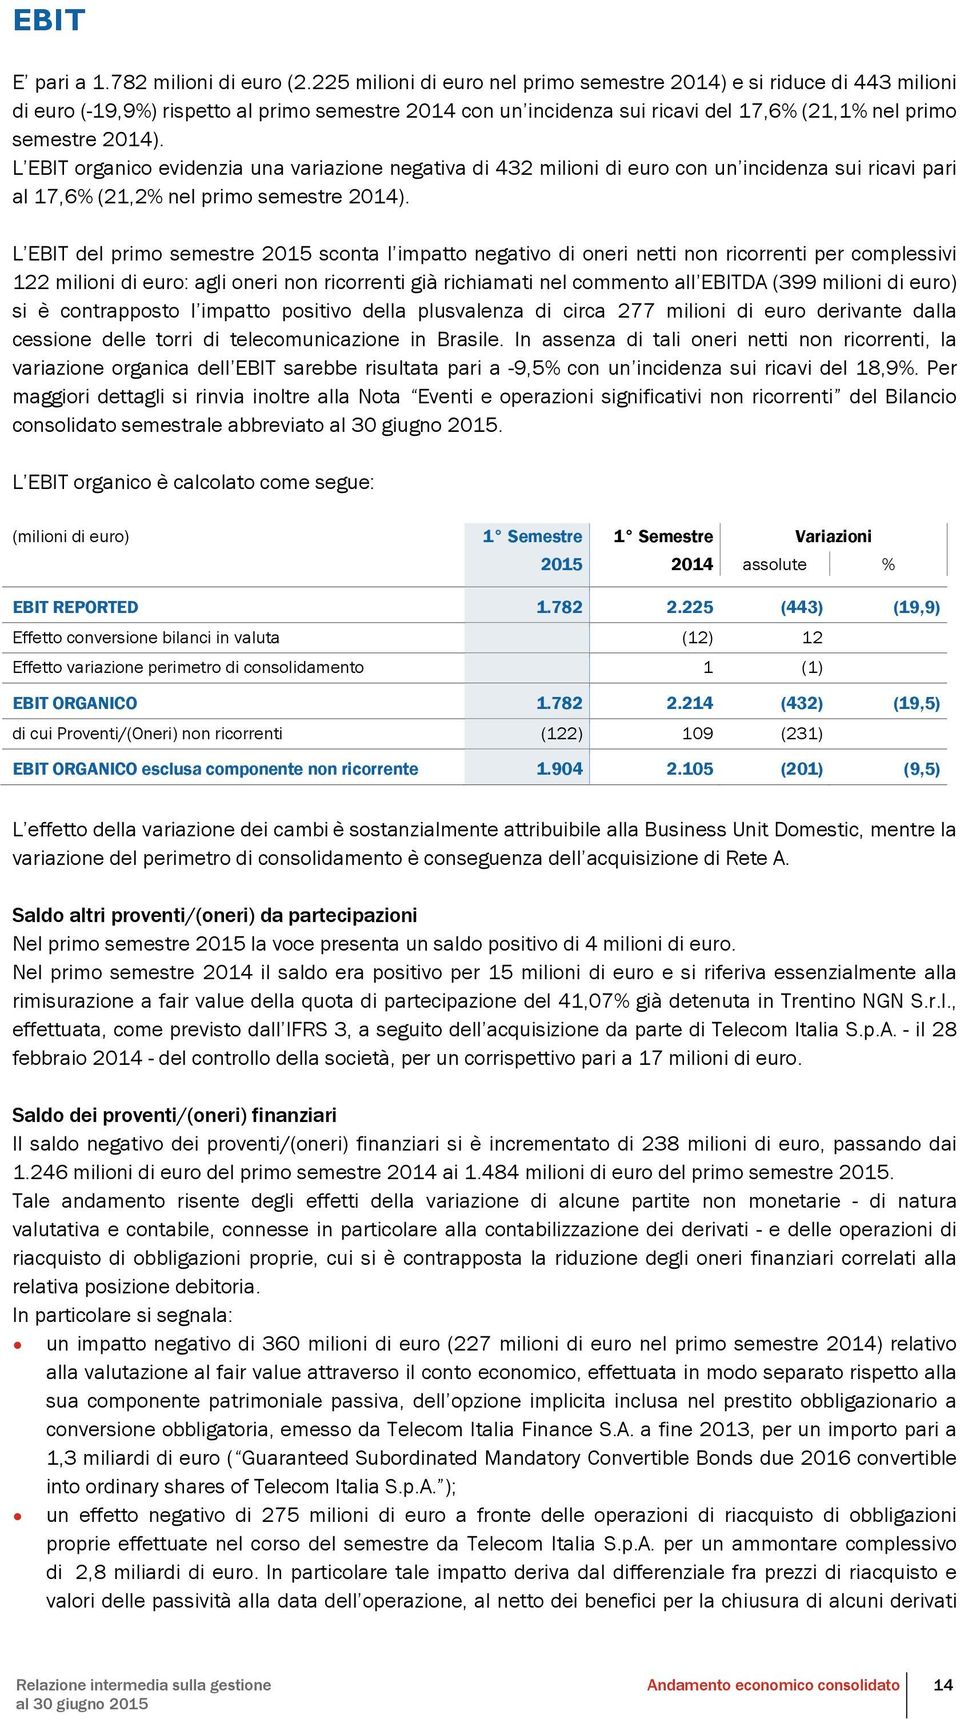 L EBIT organico evidenzia una variazione negativa di 432 milioni di euro con un incidenza sui ricavi pari al 17,6% (21,2% nel primo semestre 2014).